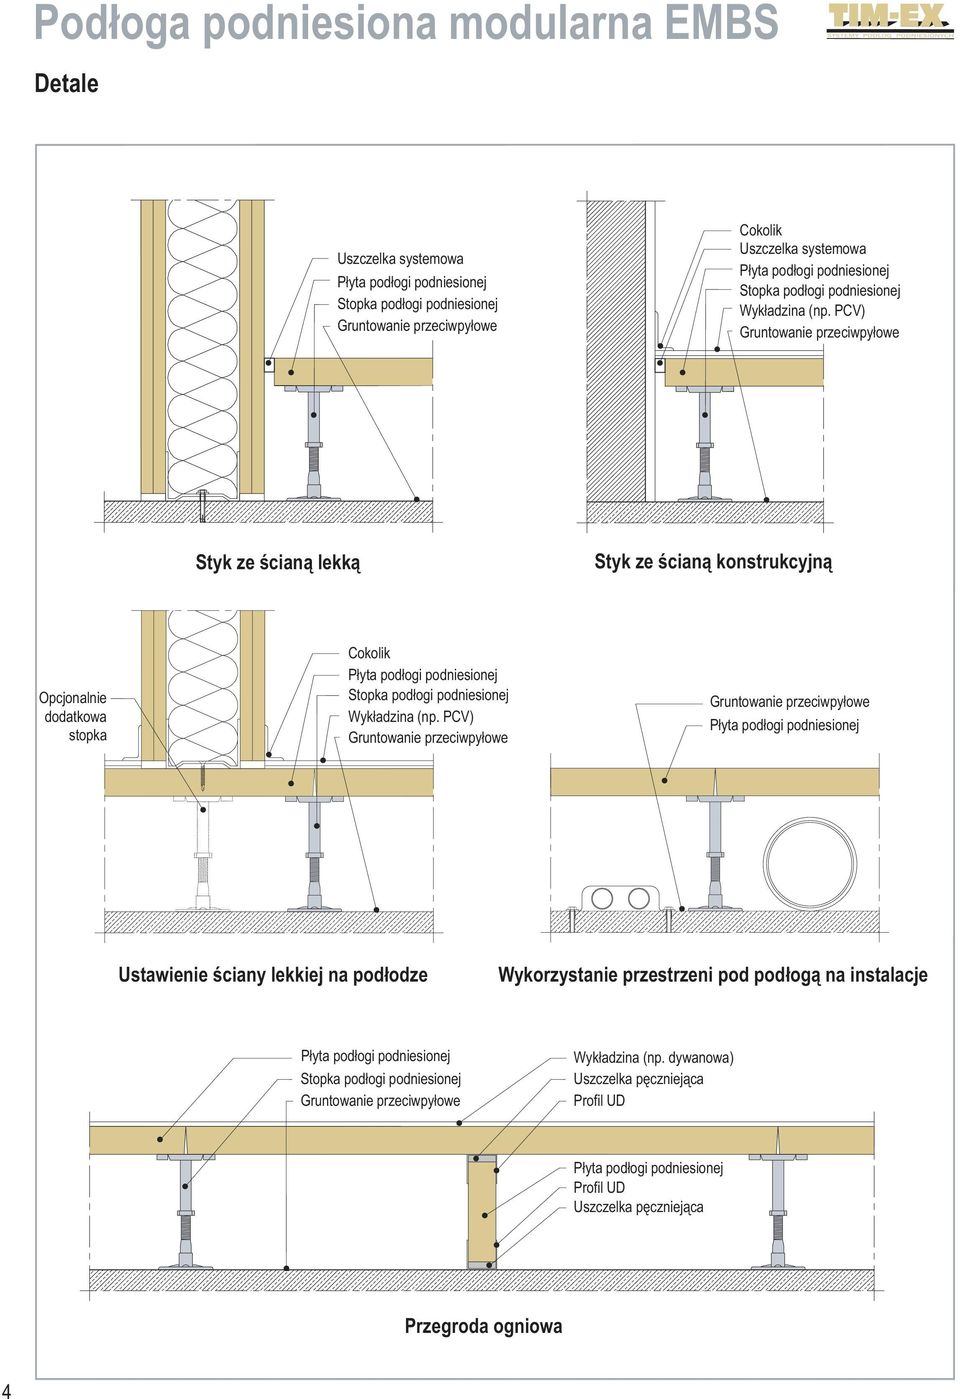 (np. PCV) Gruntowanie przeciwpyłowe Gruntowanie przeciwpyłowe Ustawienie ściany lekkiej na podłodze Wykorzystanie przestrzeni pod podłogą na instalacje